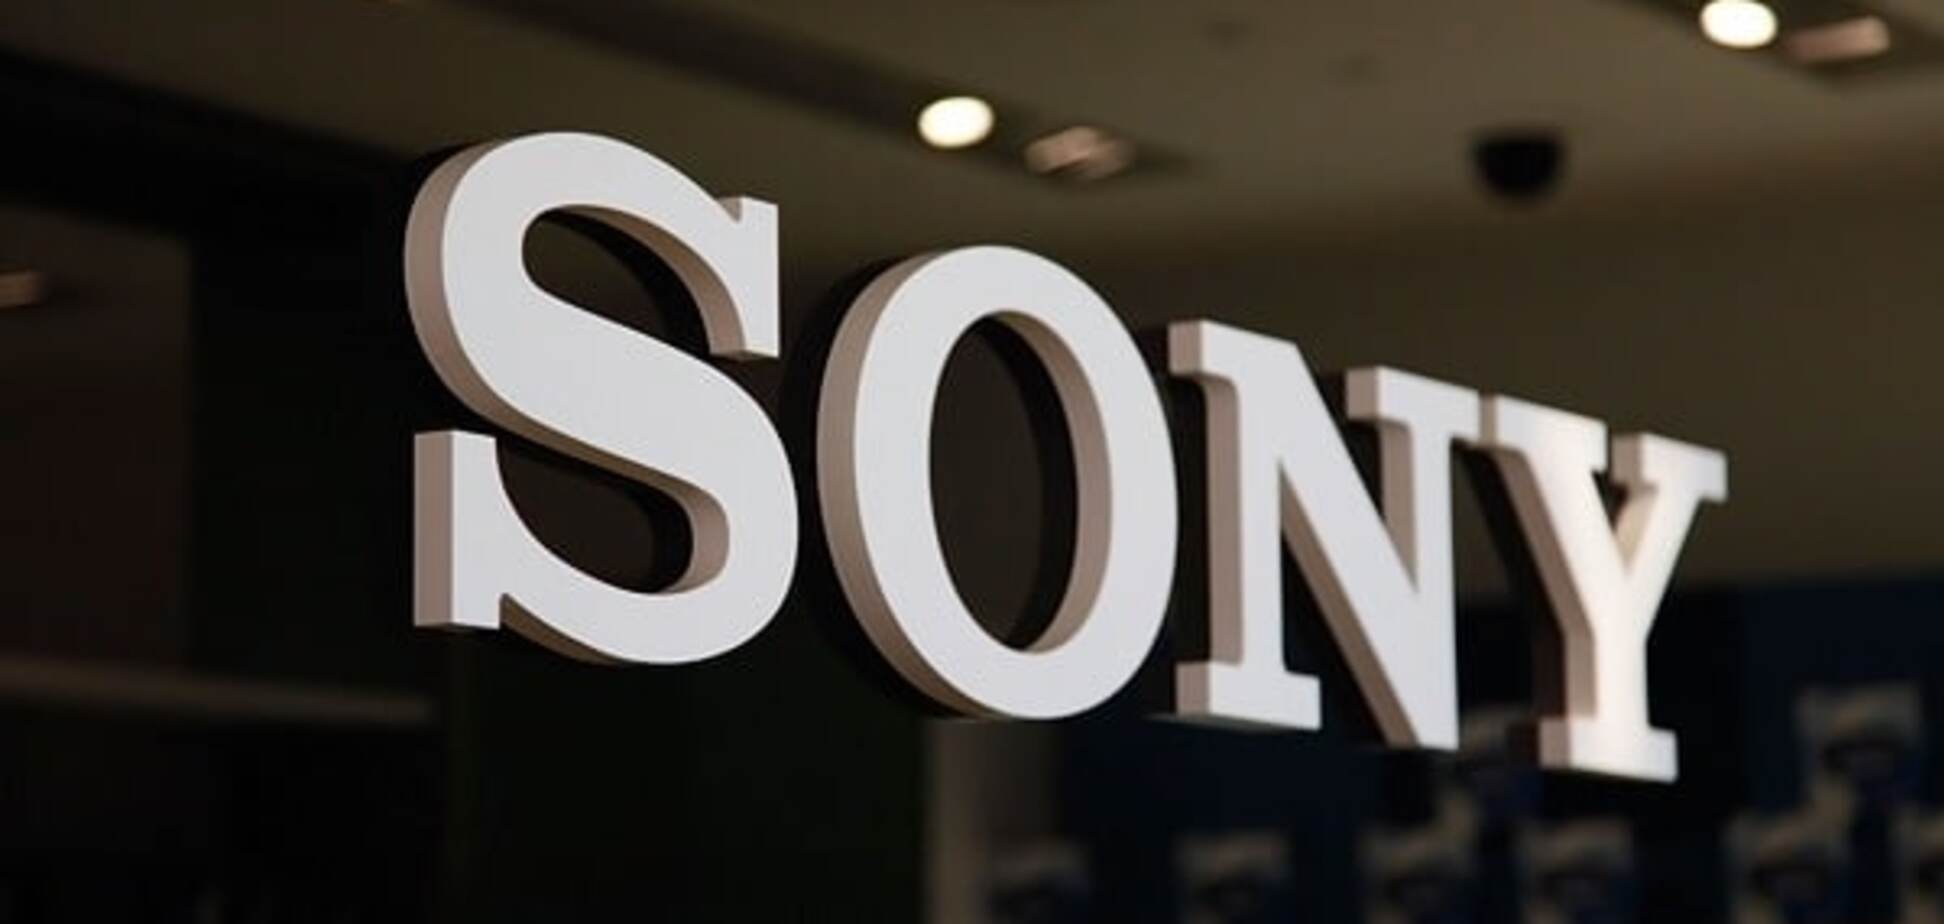 Скоро все крупные производители смартфонов будут использовать технологию двойного объектива от Sony